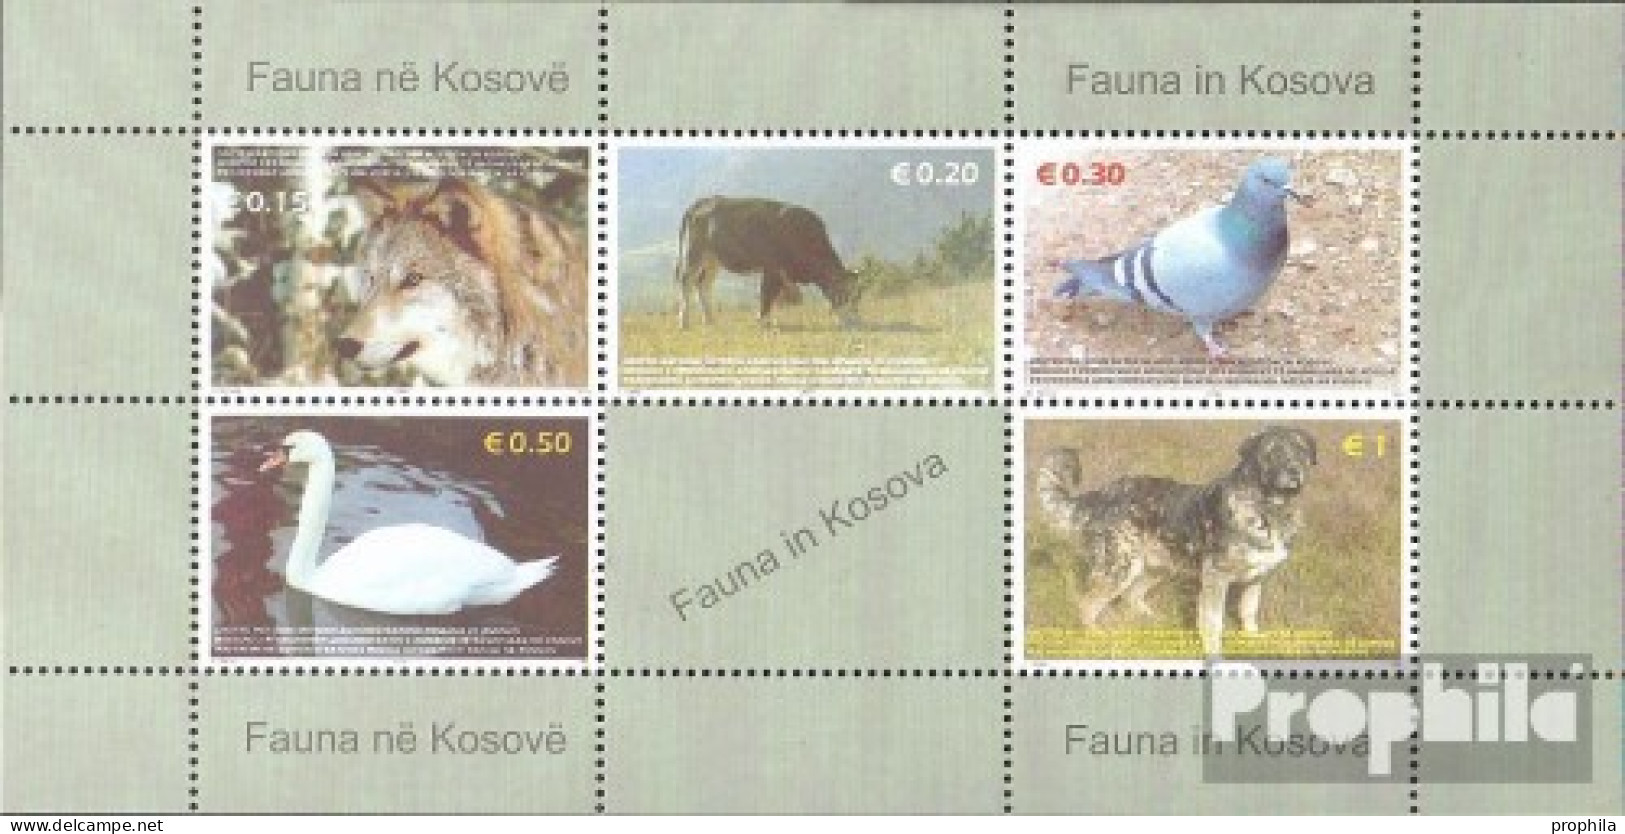 Kosovo Block1 (kompl.Ausg.) Postfrisch 2006 Tiere - Blokken & Velletjes